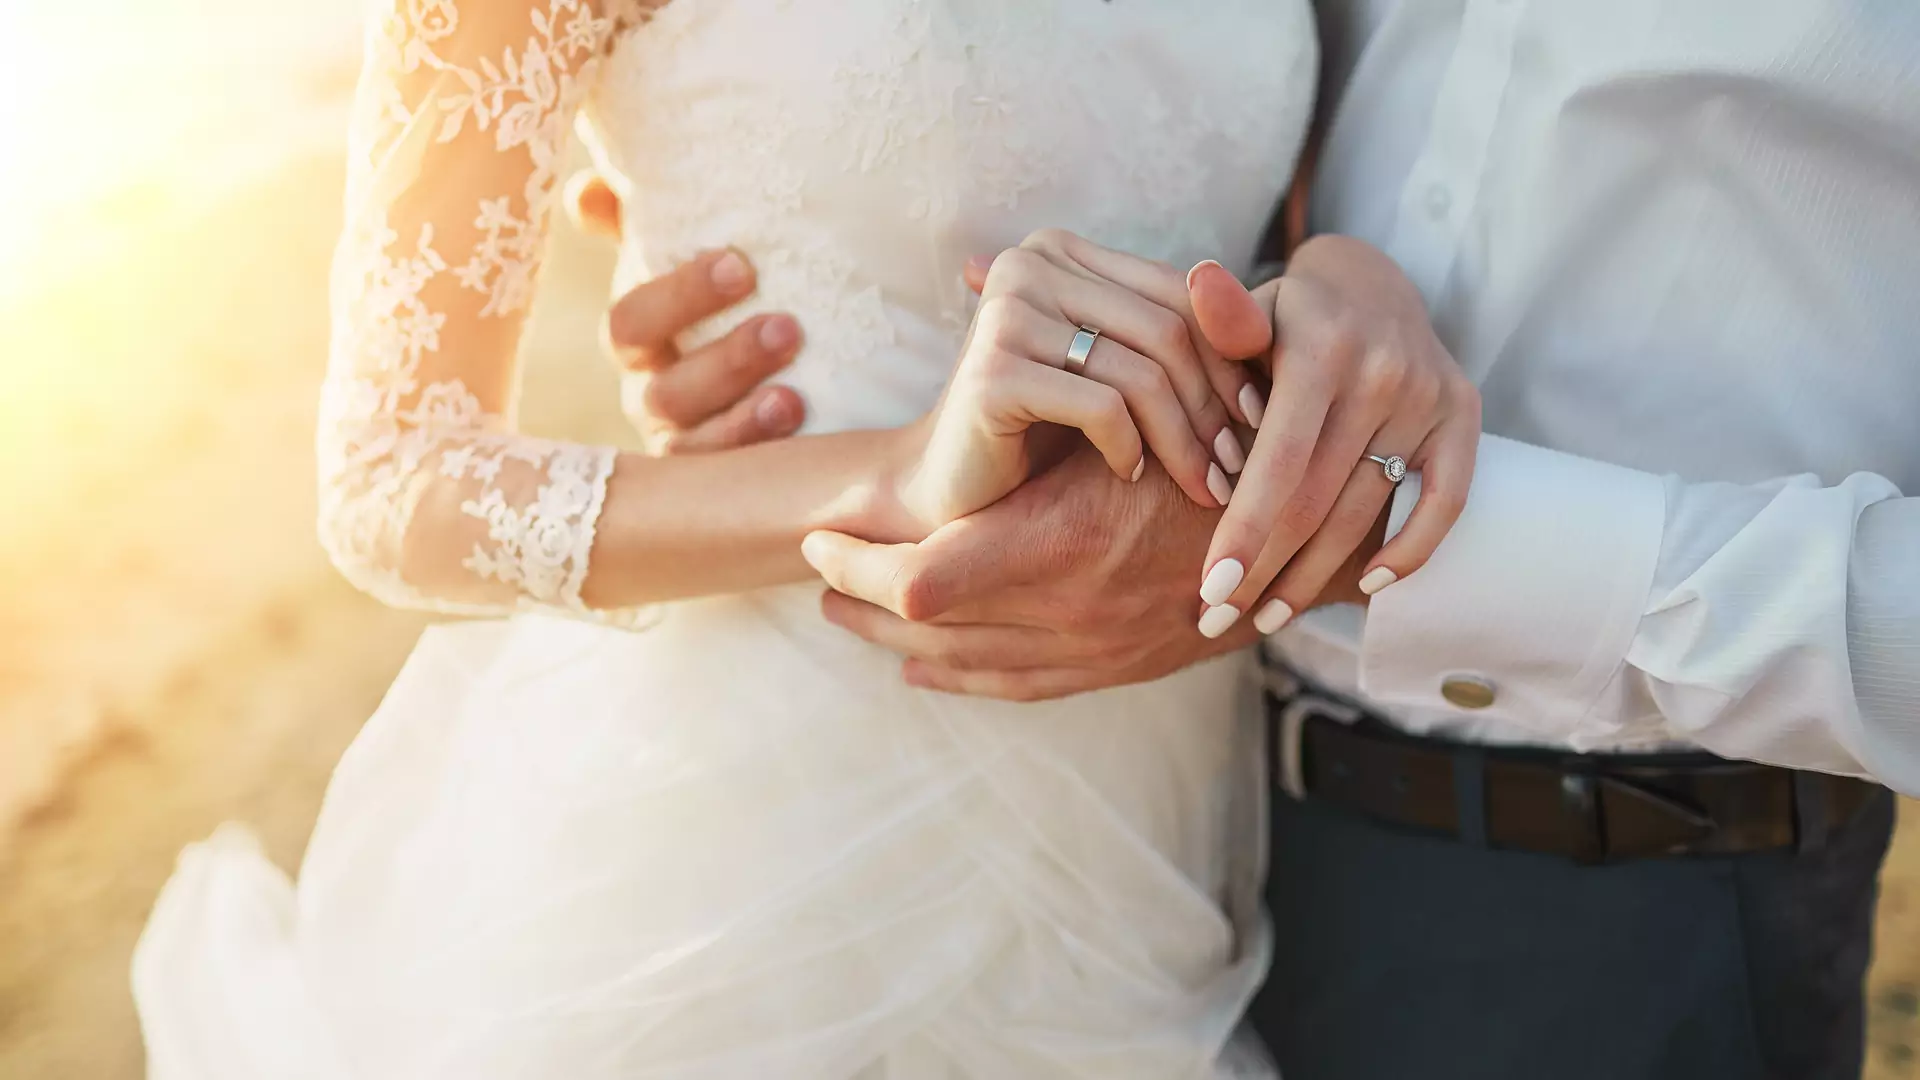 Oto najlepszy wiek na wzięcie ślubu według naukowców. "Ryzyko rozwodu jest najniższe"